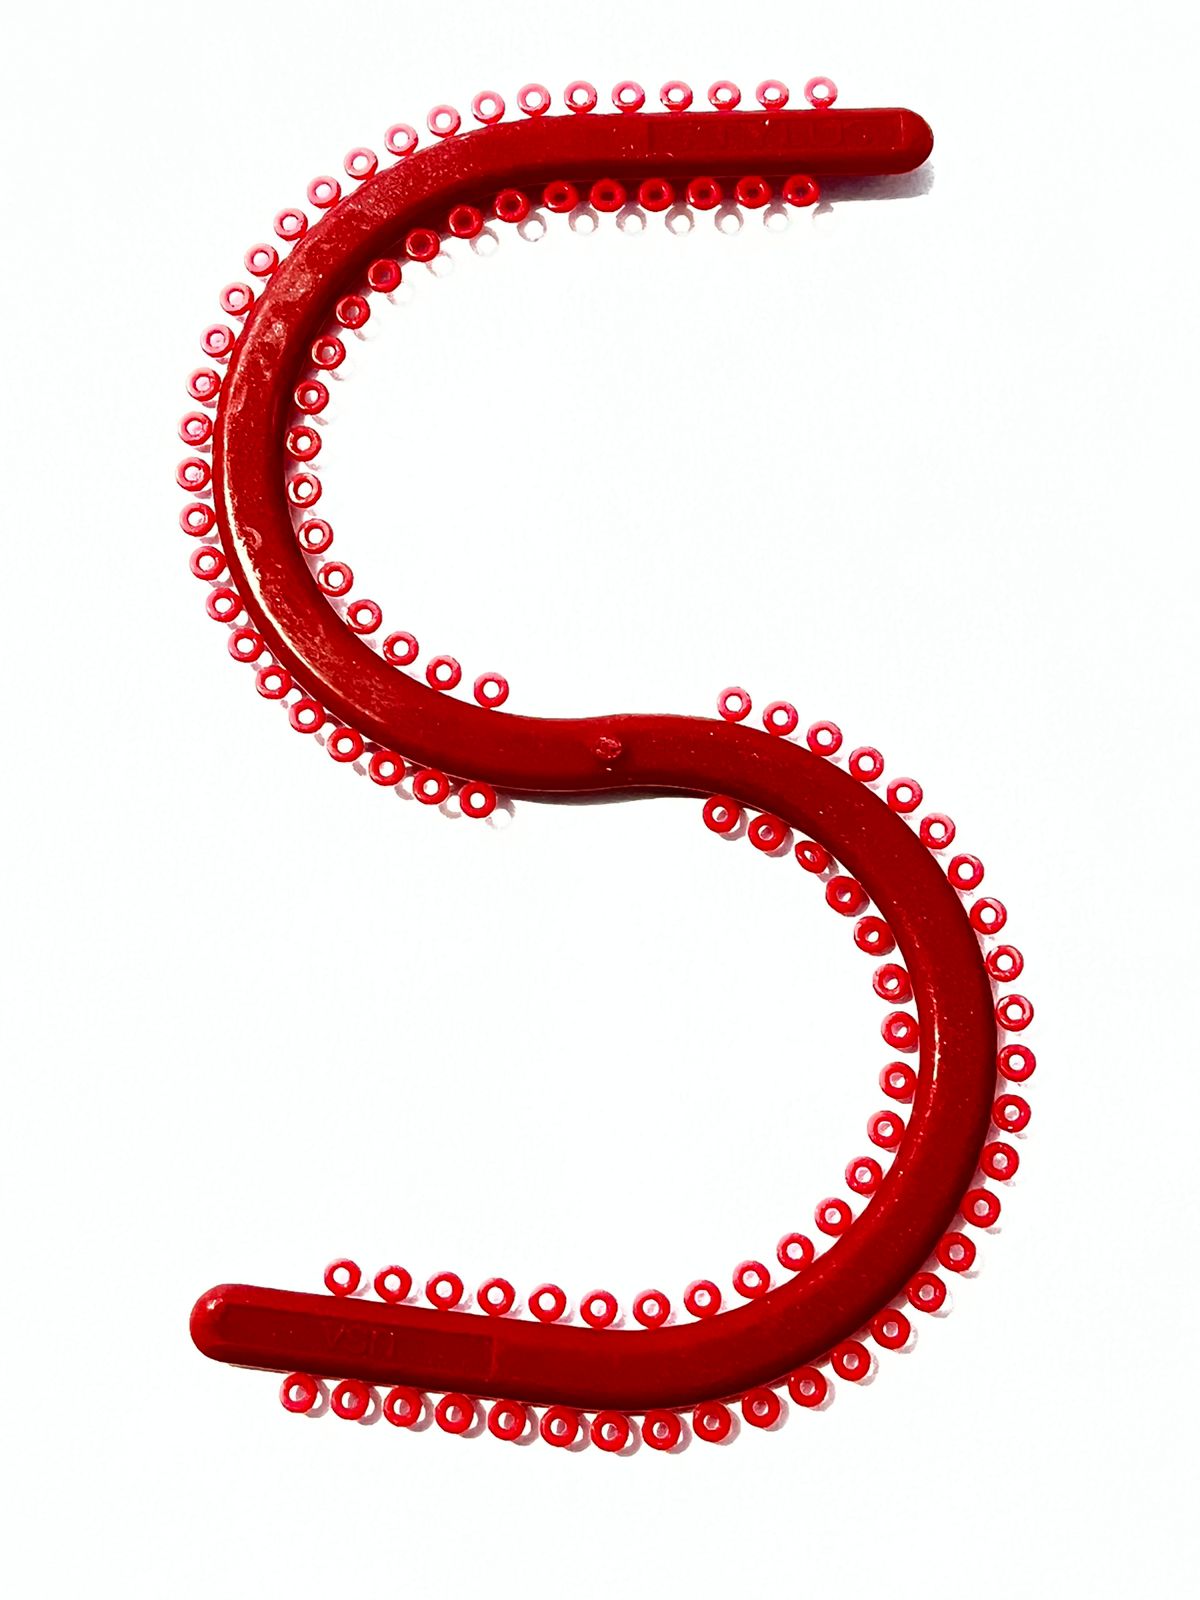 Módulos en "S" elastómeros Ah Kim Pech por pieza